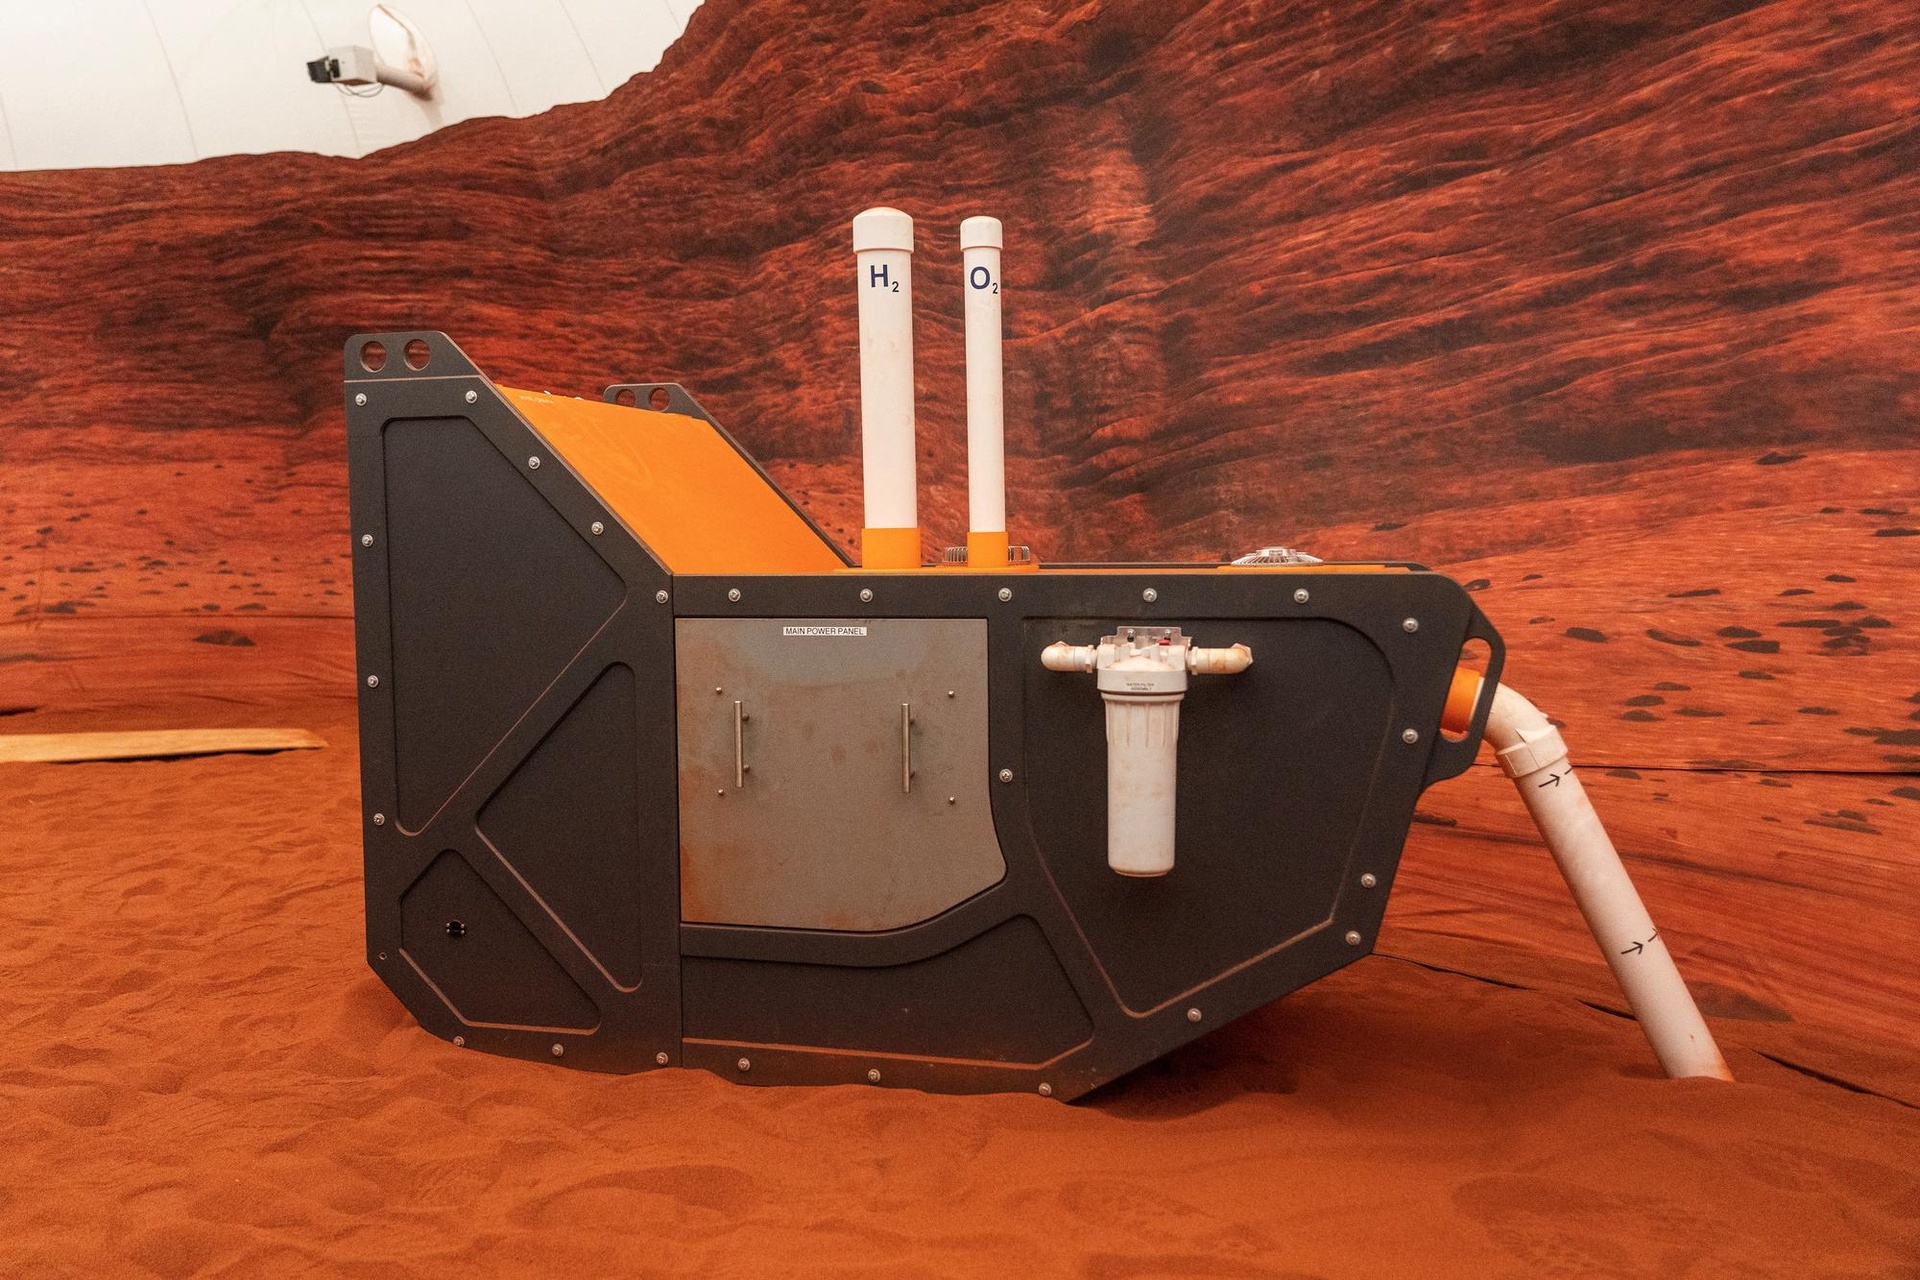 Không gian mô phỏng giúp con người sống như trên Hỏa tinh - Ảnh 7.